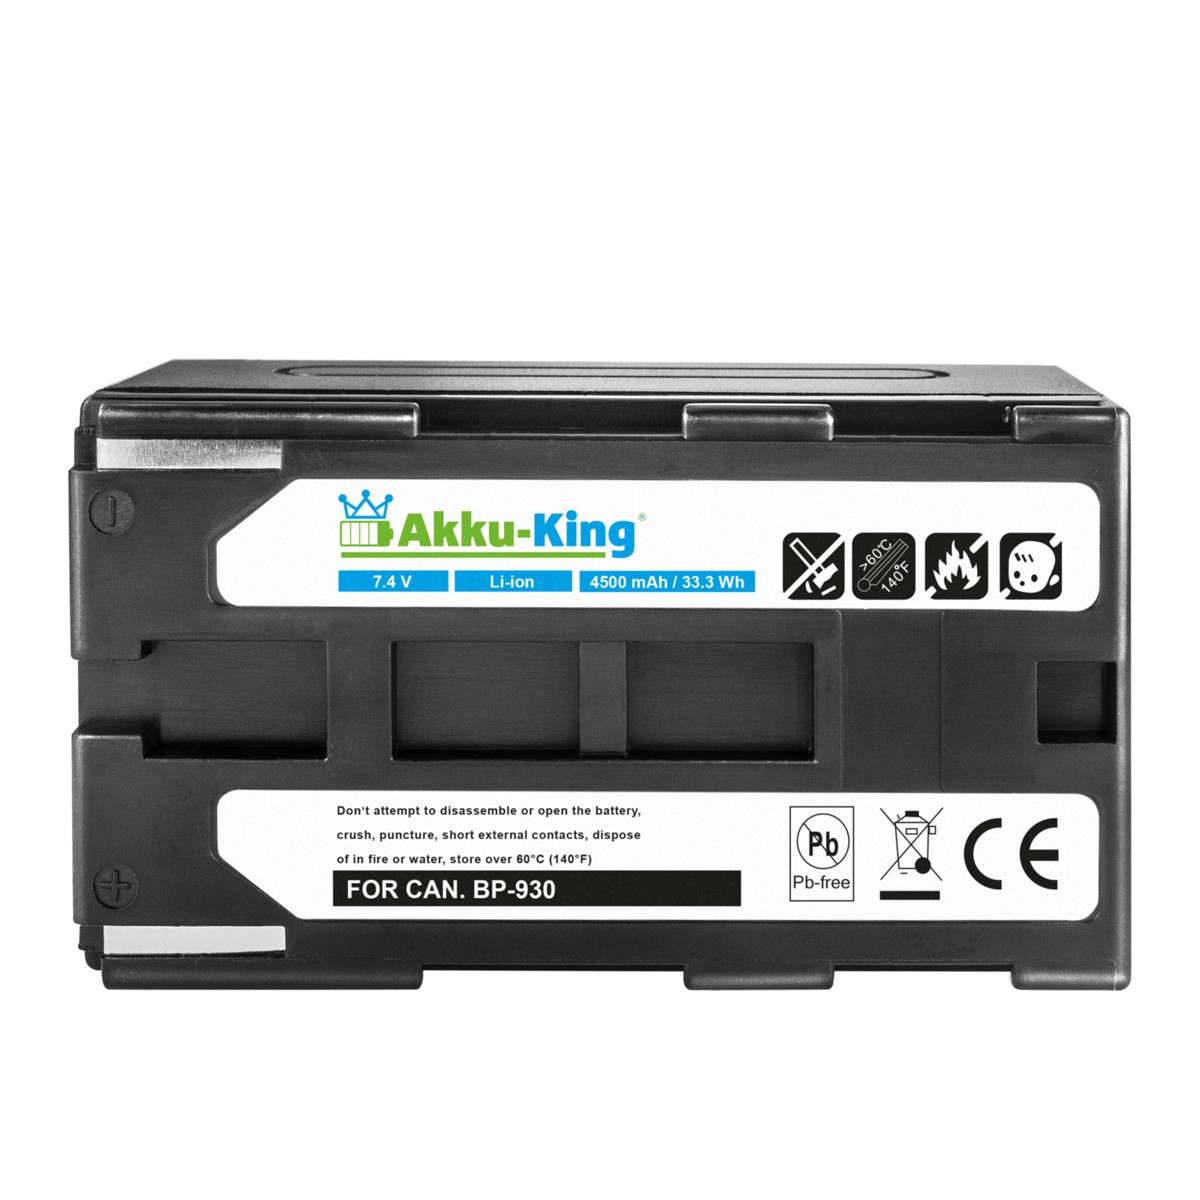 AKKU-KING Akku 7.4 Volt, Li-Ion BP-930 Canon 4500mAh Kamera-Akku, mit kompatibel